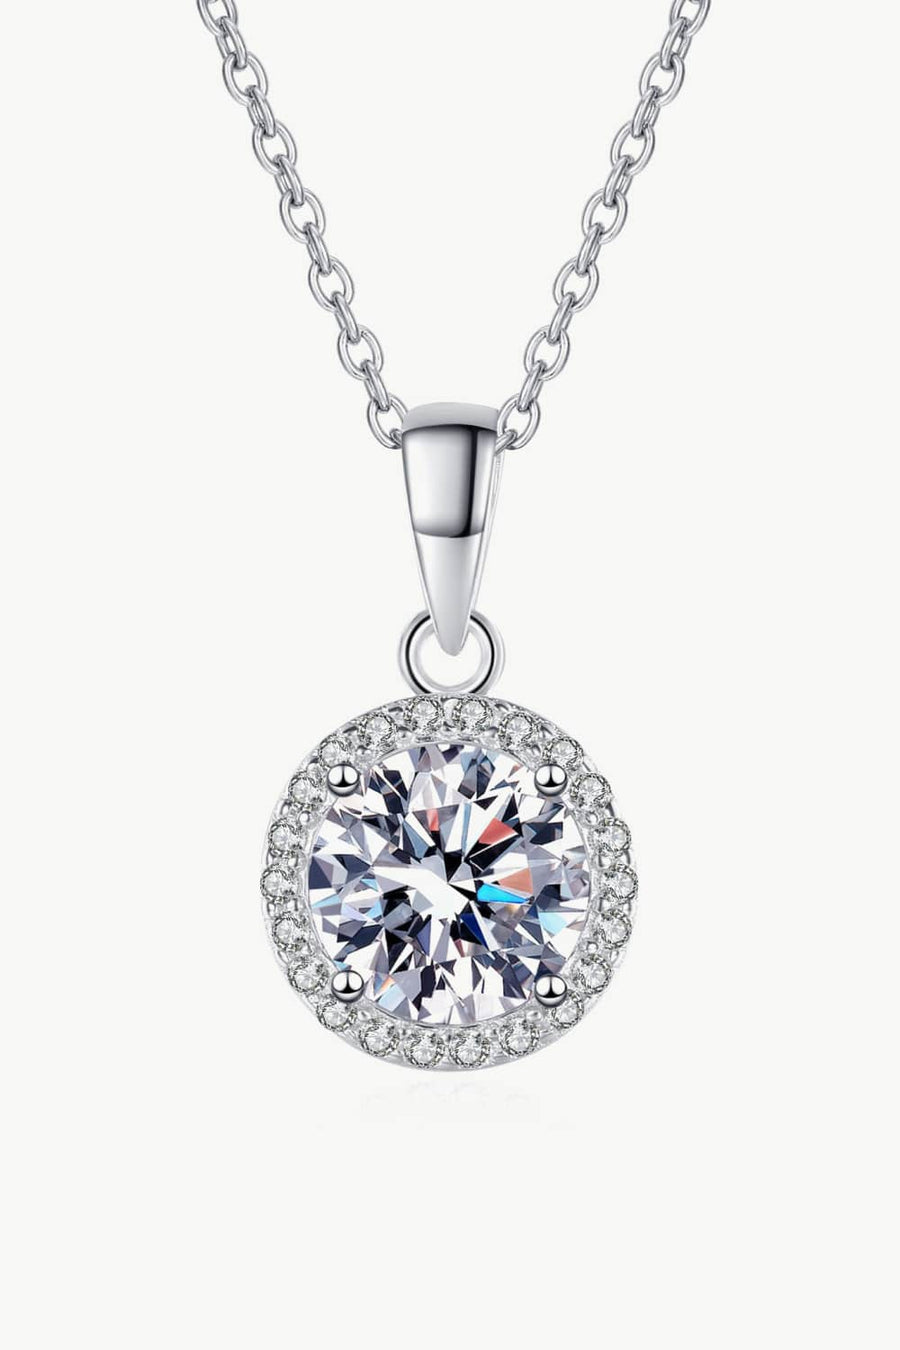 1# BEST Diamond Necklace, Earrings, Bracelet Jewelry Bundle Set Gift for Women | #1 Best Most Top Trendy Trending Floral Diamond Necklace, Earrings, Bracelet Jewelry Gift for Women, Mother, Wife, Daughter, Ladies | MASON New York